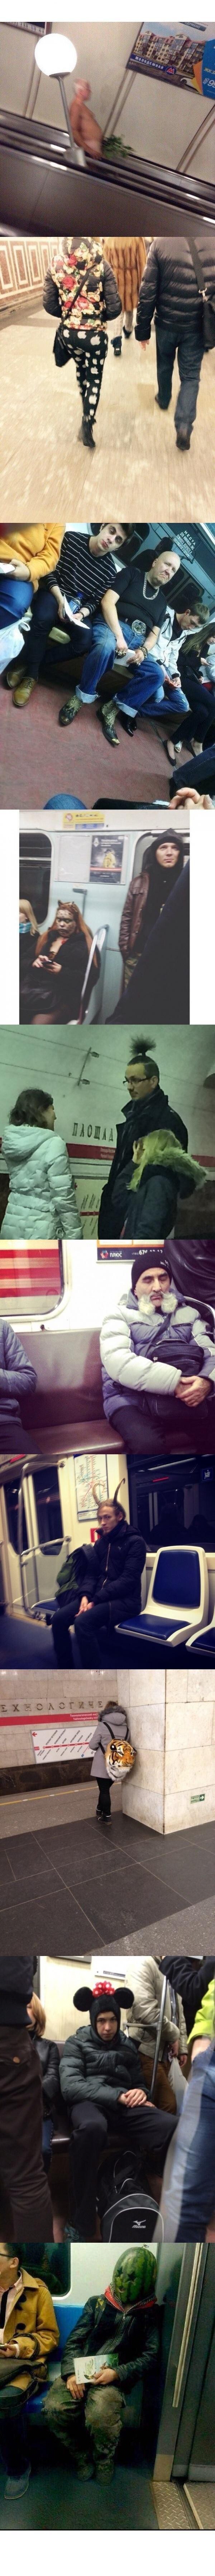 Очередная подборка странных людей из московского метро